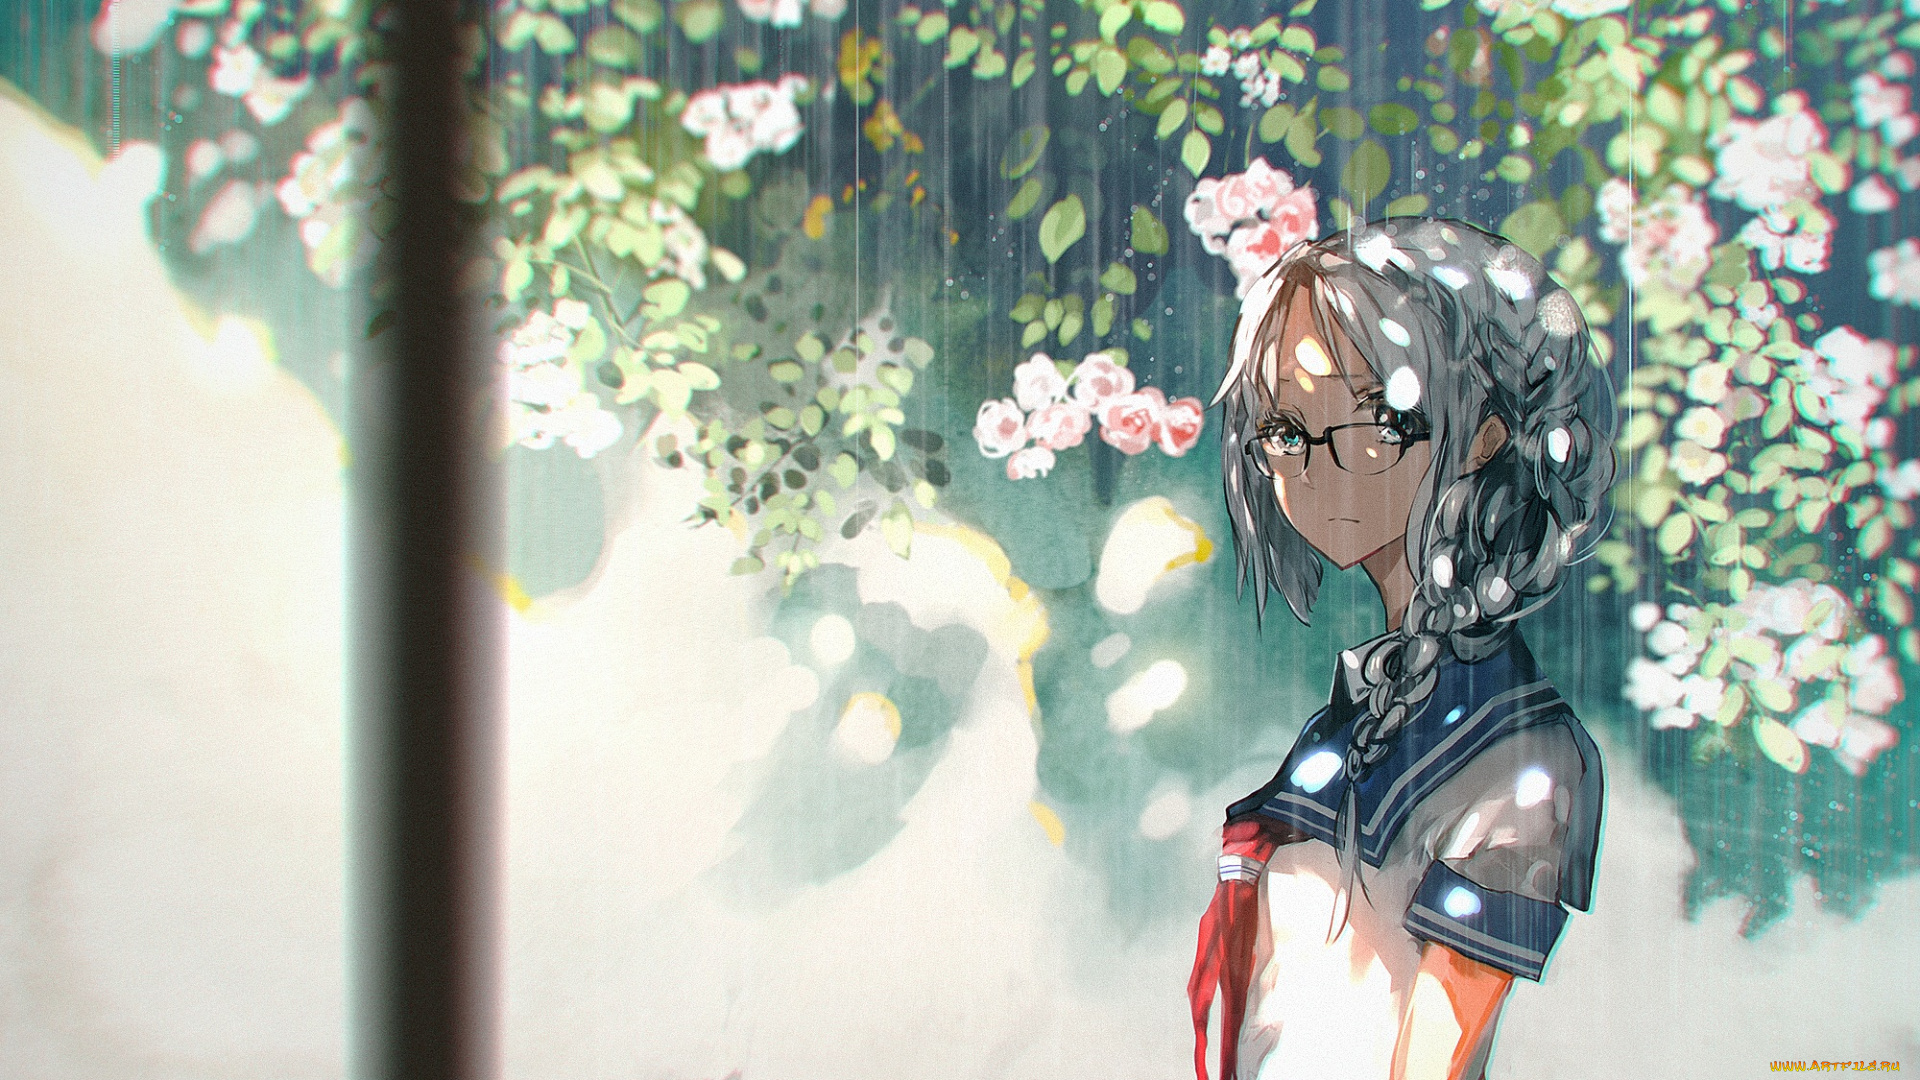 аниме, unknown, , другое, растения, 5esrs, цветы, дождь, очки, девушка, форма